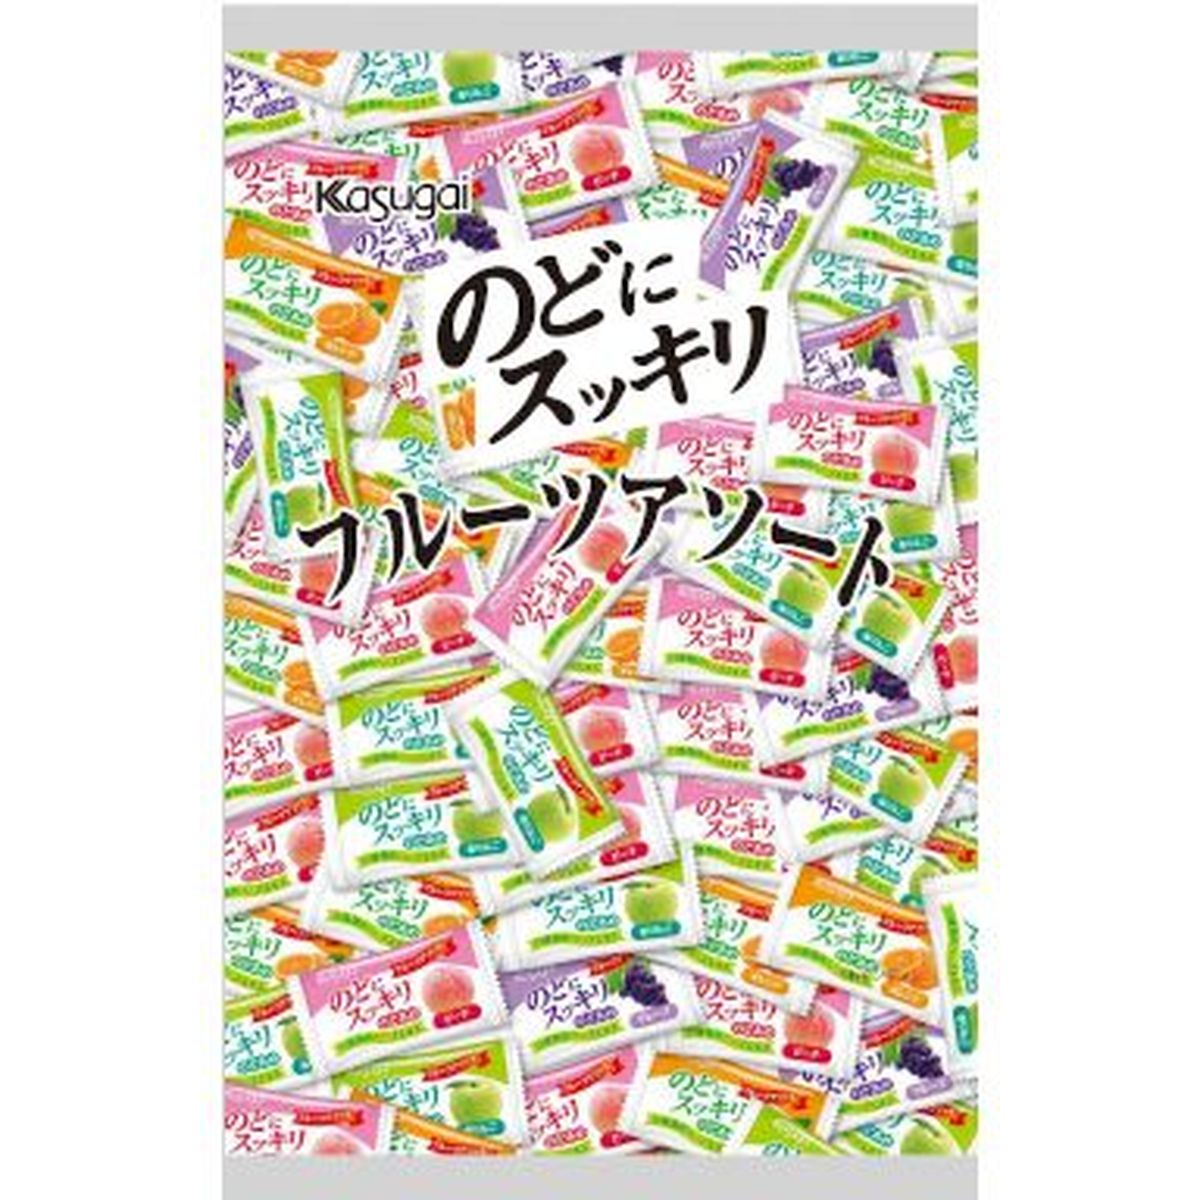 【10個入リ】春日井 ノドニスッキリ フルーツアソート 1Kg